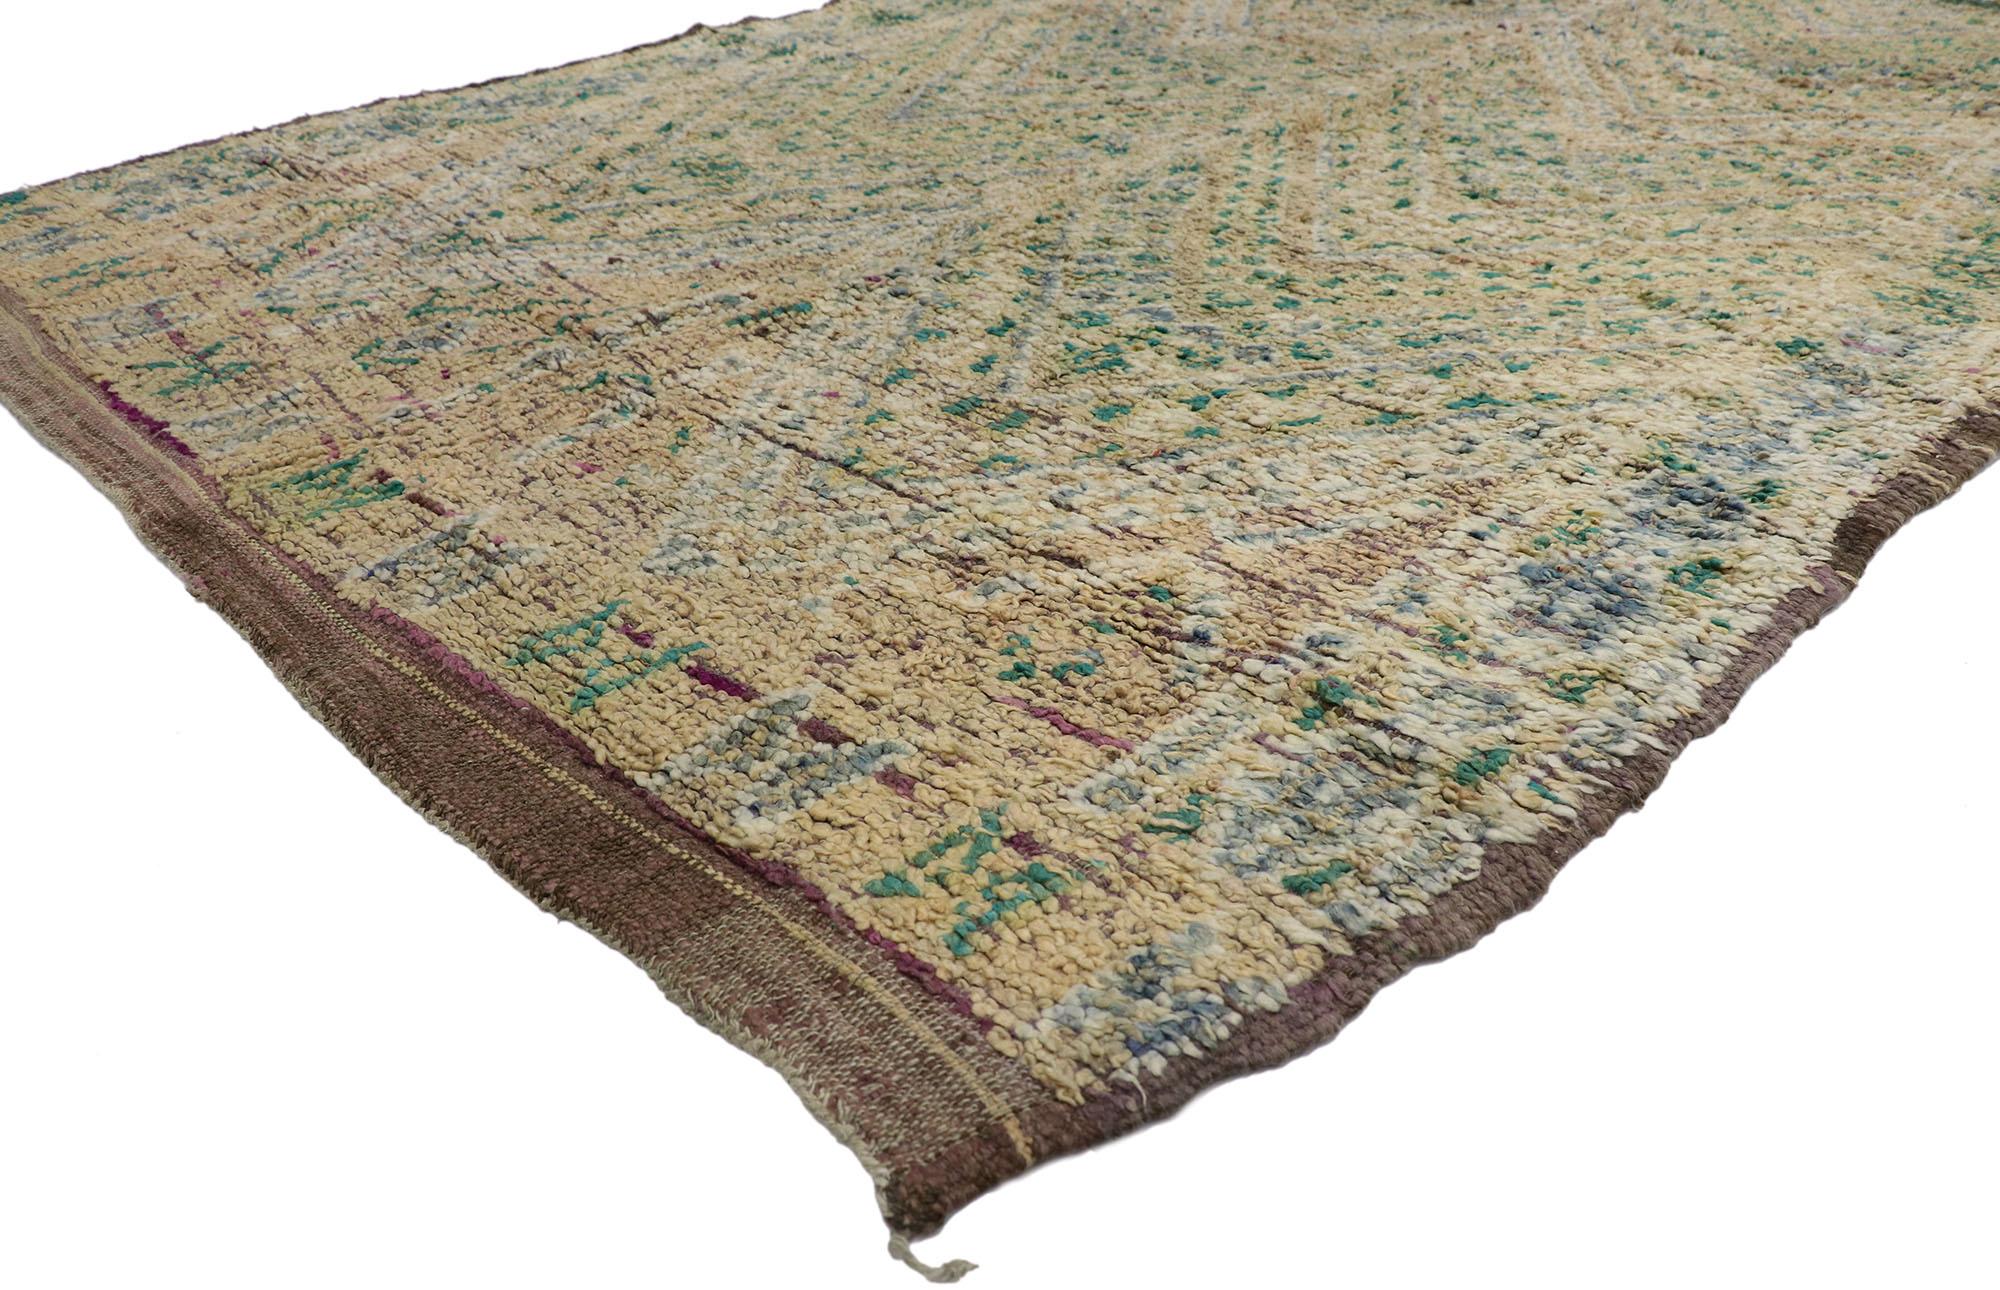 21450 Vintage Beni M'Guild Marokkanischer Teppich, 05'08 x 08'10
Dieser handgeknüpfte marokkanische Wollteppich im Vintage-Stil versprüht nomadischen Charme mit unglaublichen Details und Texturen und ist eine fesselnde Vision gewebter Schönheit. Das